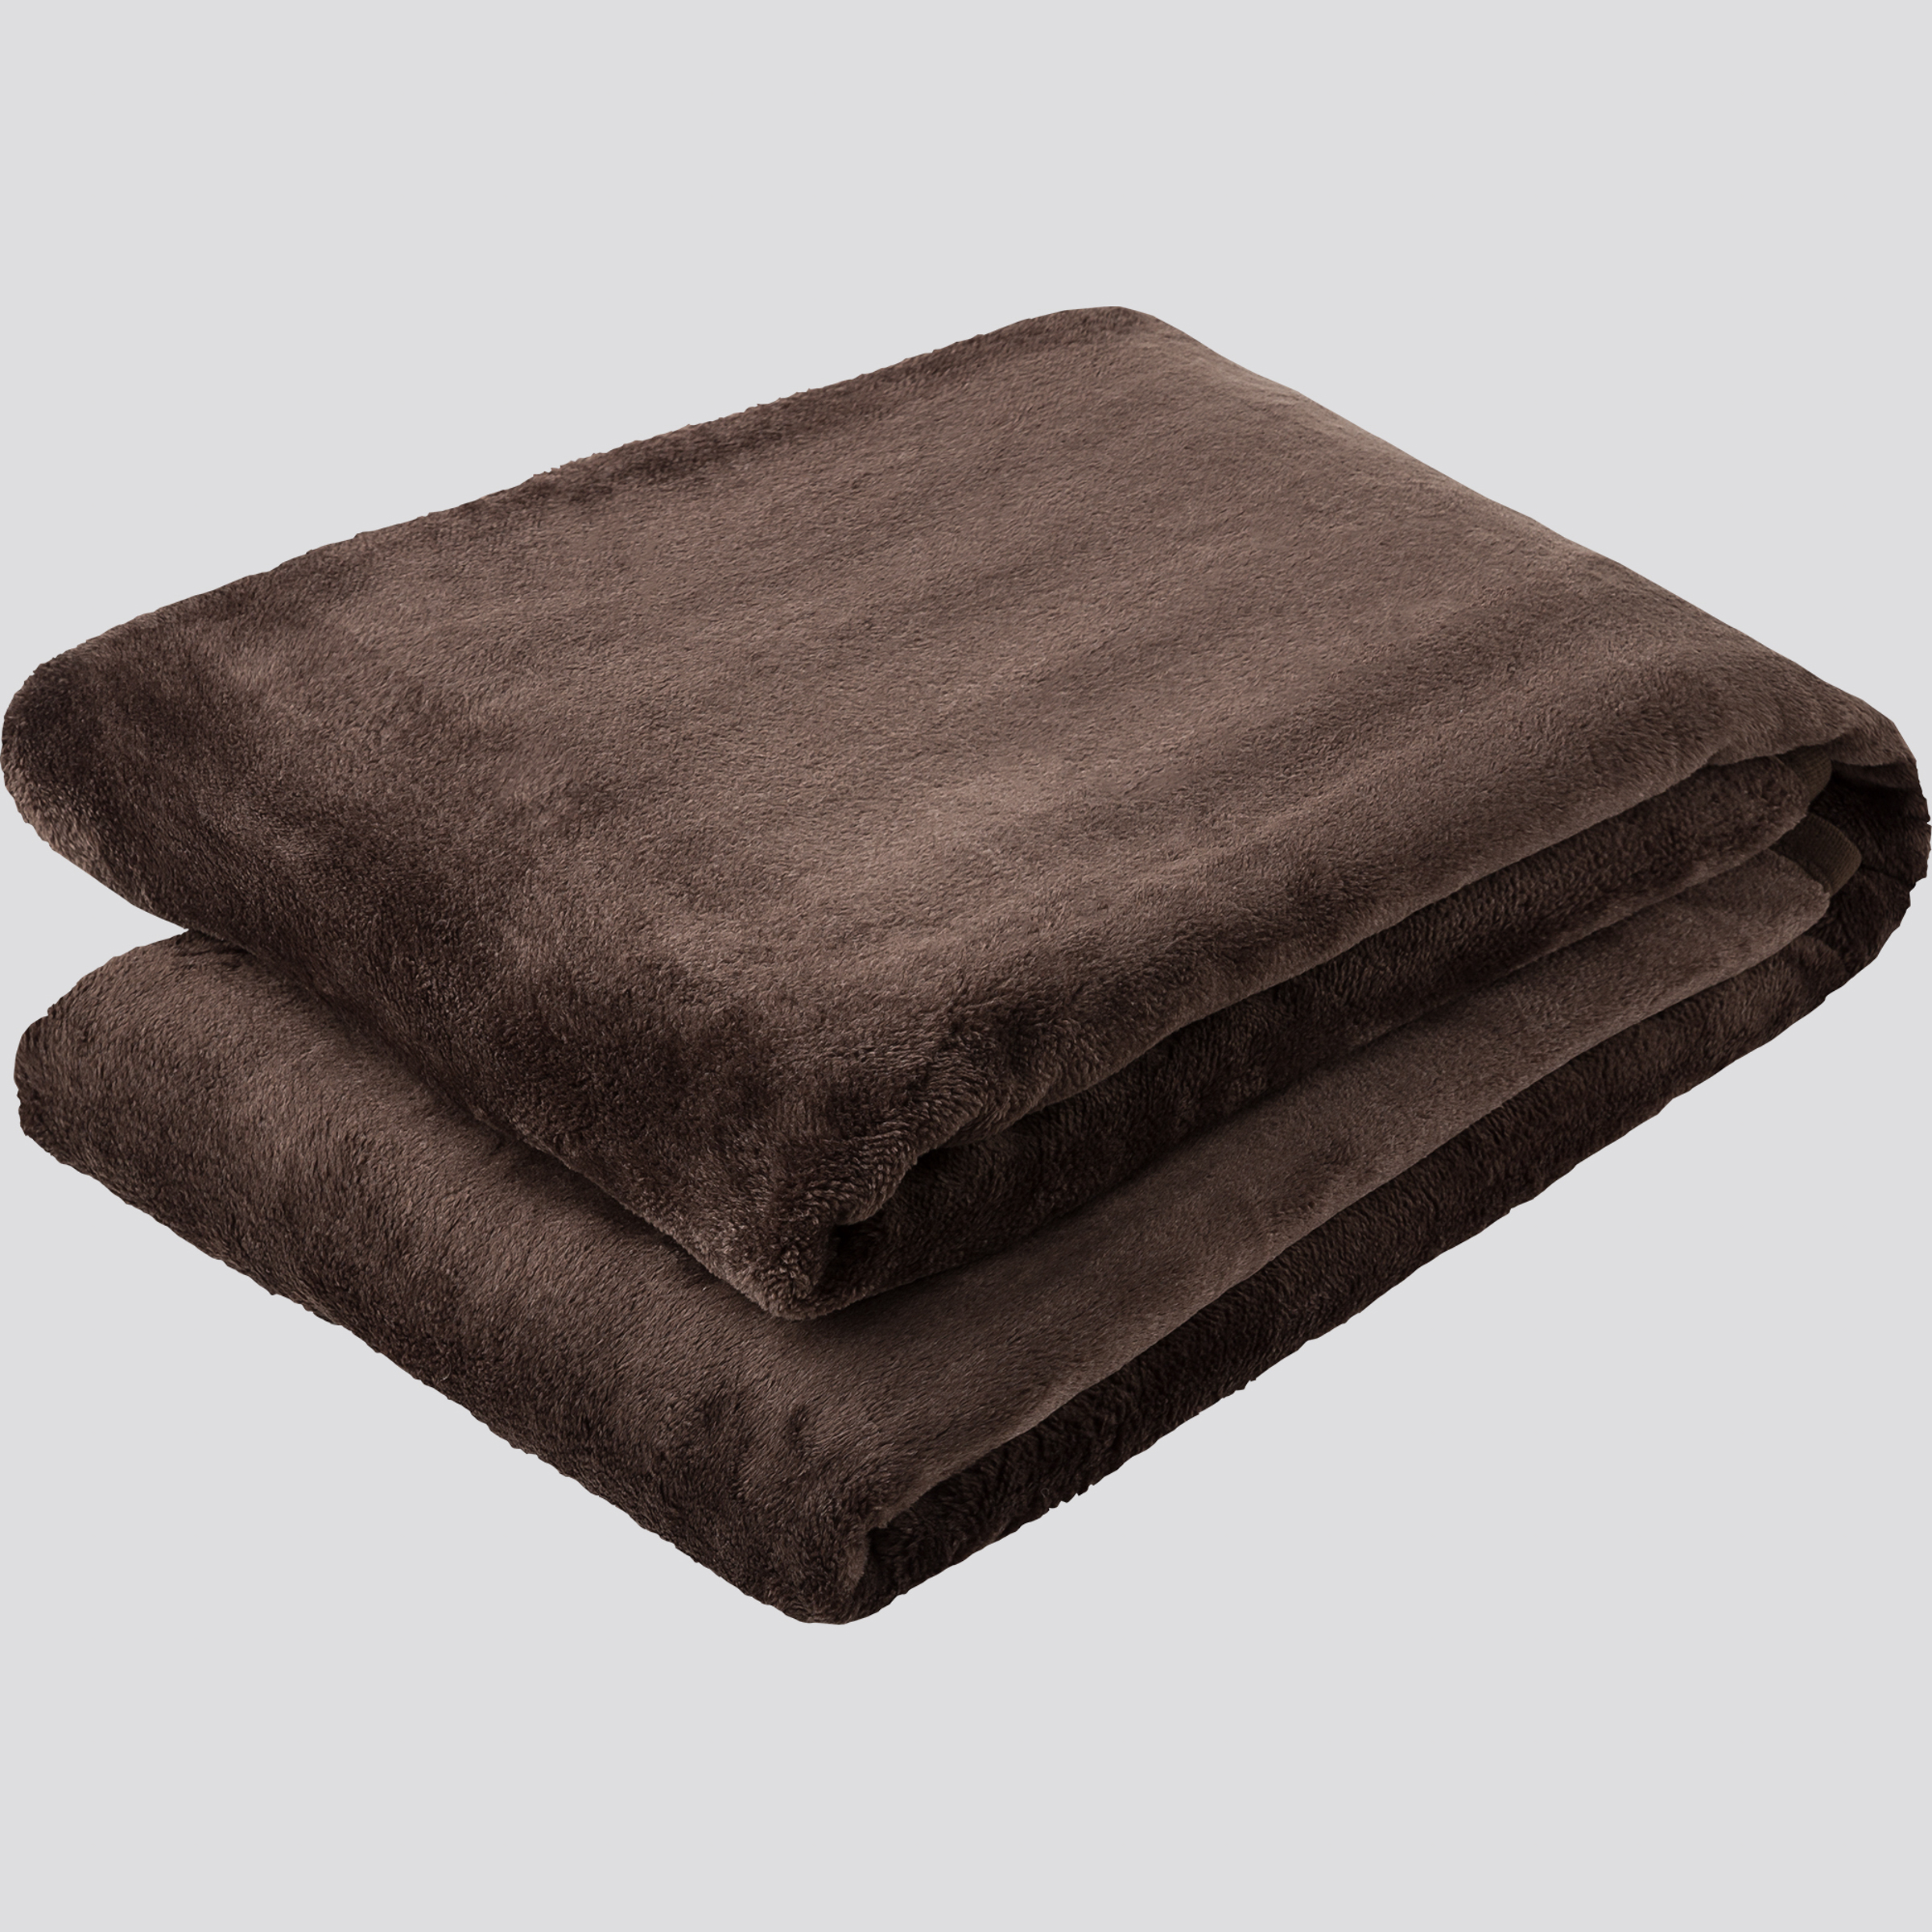 ユニクロが「ヒートテック毛布」 の店頭販売を開始、シングルとダブル